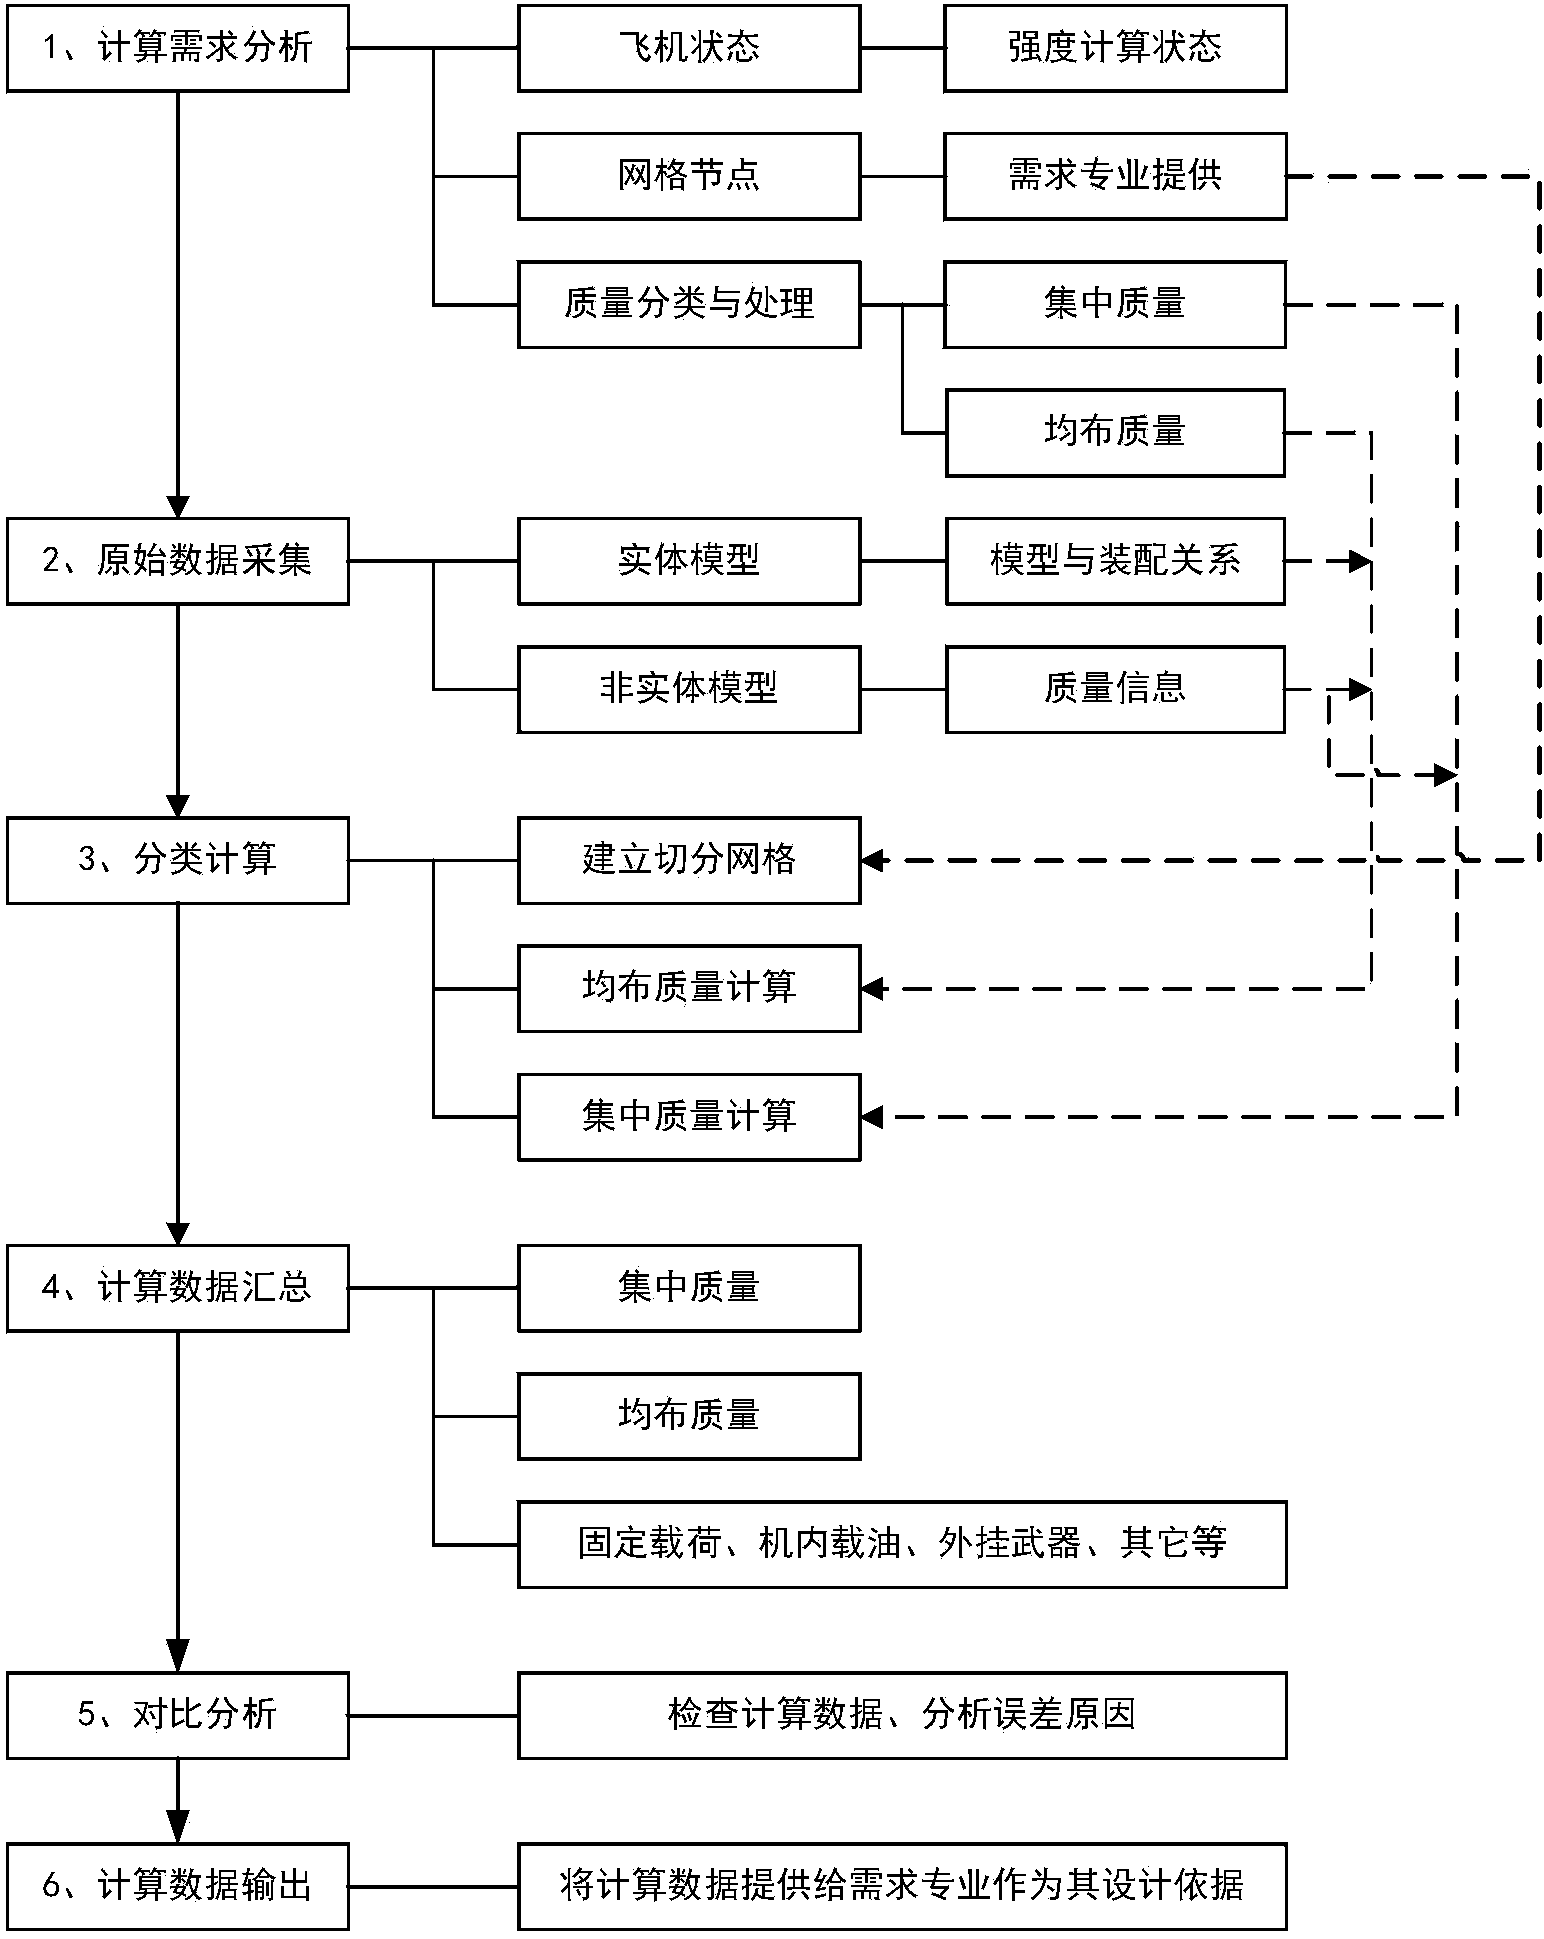 Computation method for mass distribution of aircraft